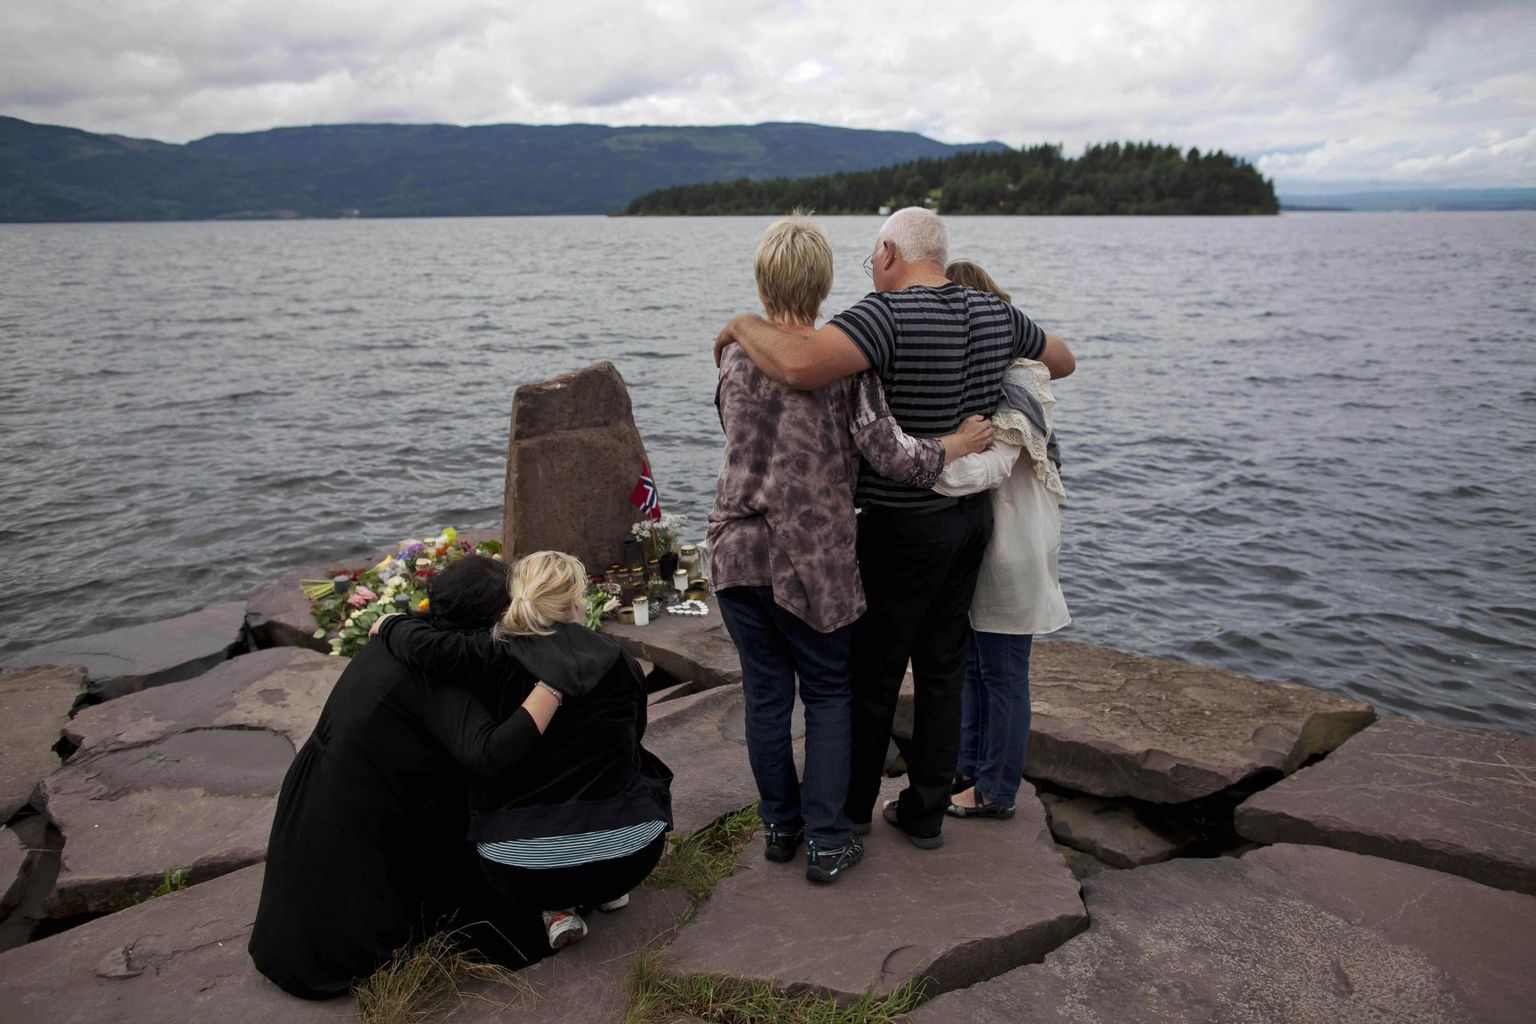 Ühe ohvri lähedased paar päeva pärast 2011. aasta massimõrva paadisillal vaatamas Utøya saare poole, kus paremäärmuslane Anders Behring Breivik tappis 69 inimest. Enne seda oli tema õhitud pomm surmanud Oslo valitsuskvartalis kaheksa inimest. 